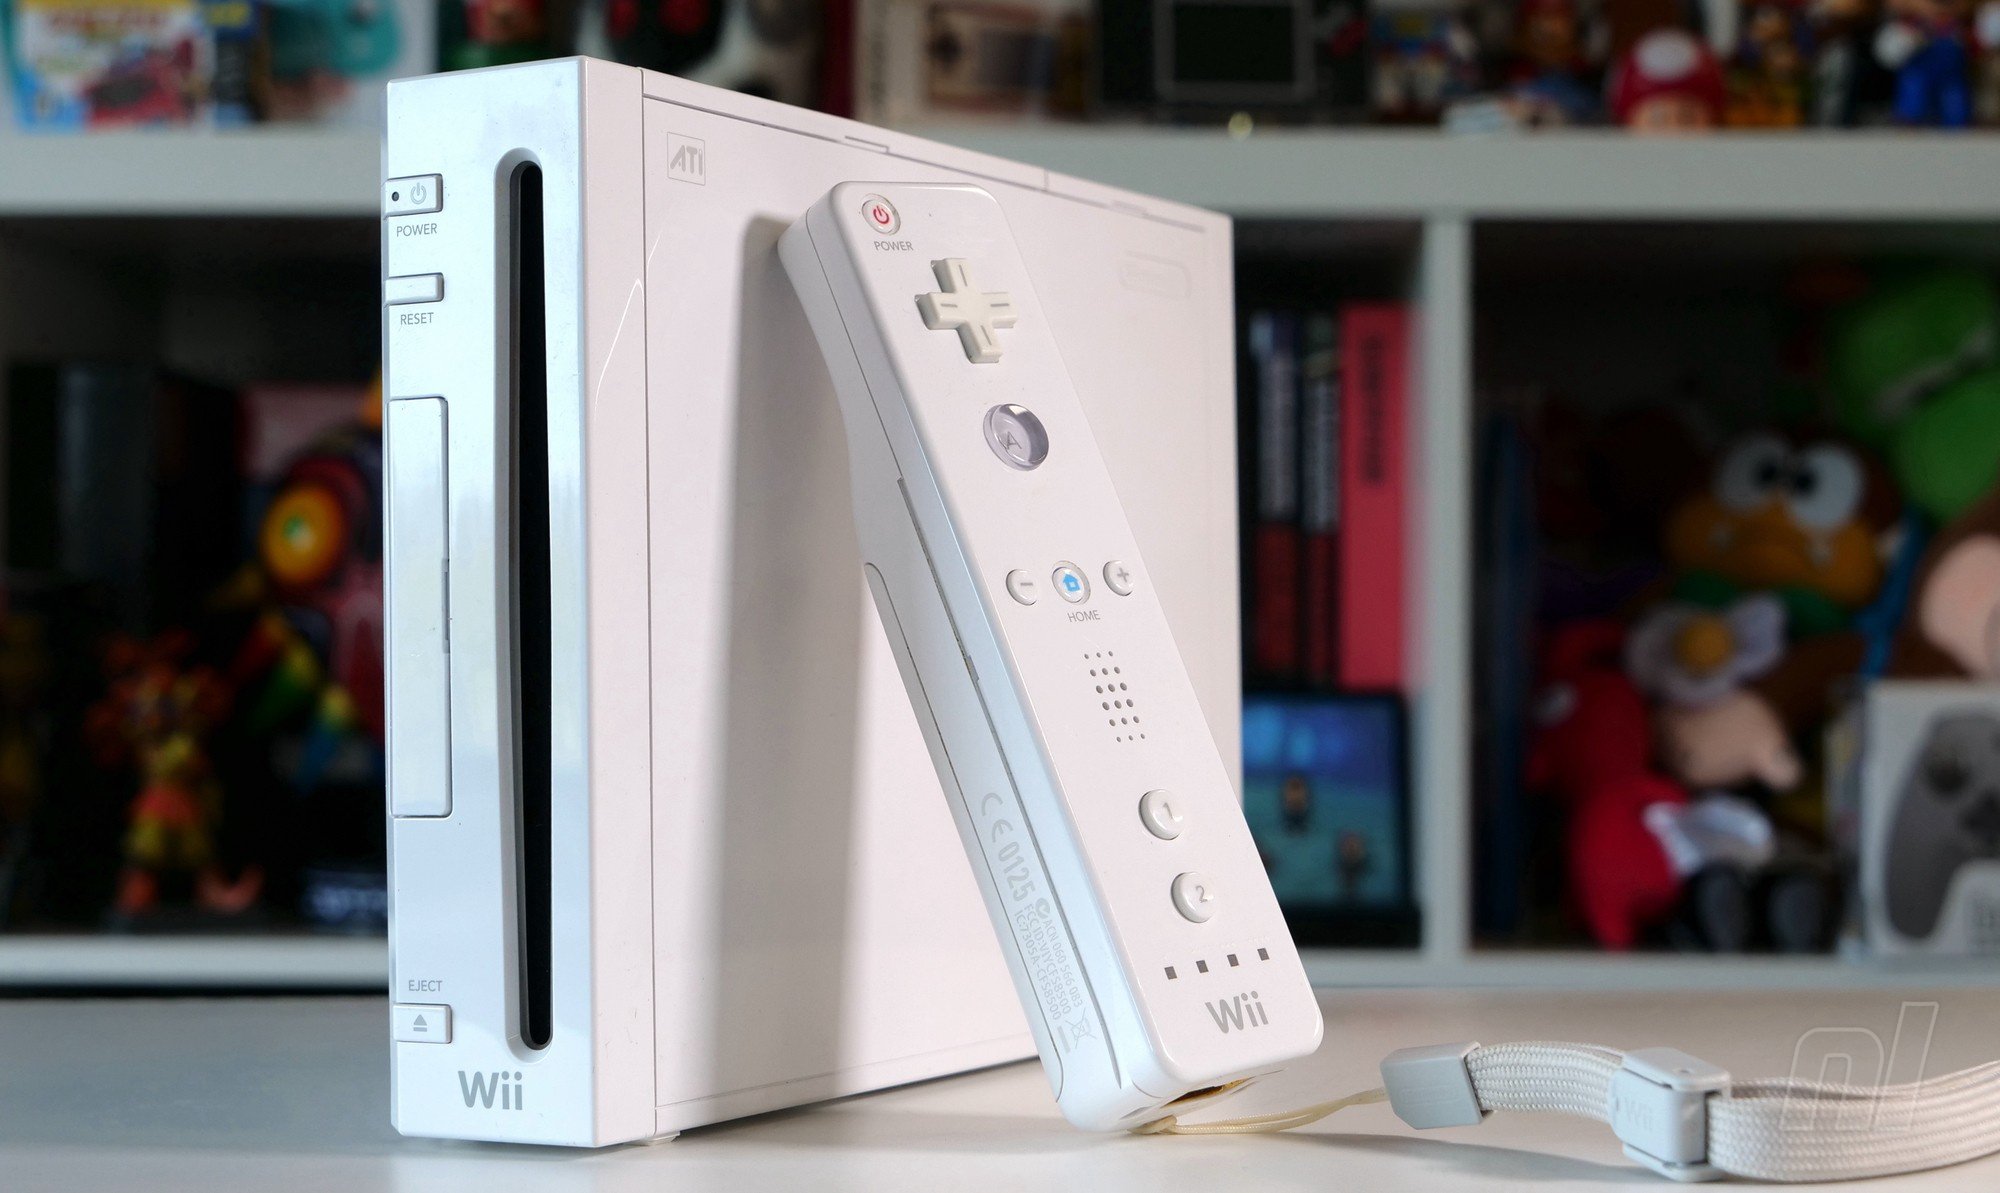 [今倒]任天堂Wii及DSi商店停擺多日 官方避不回應